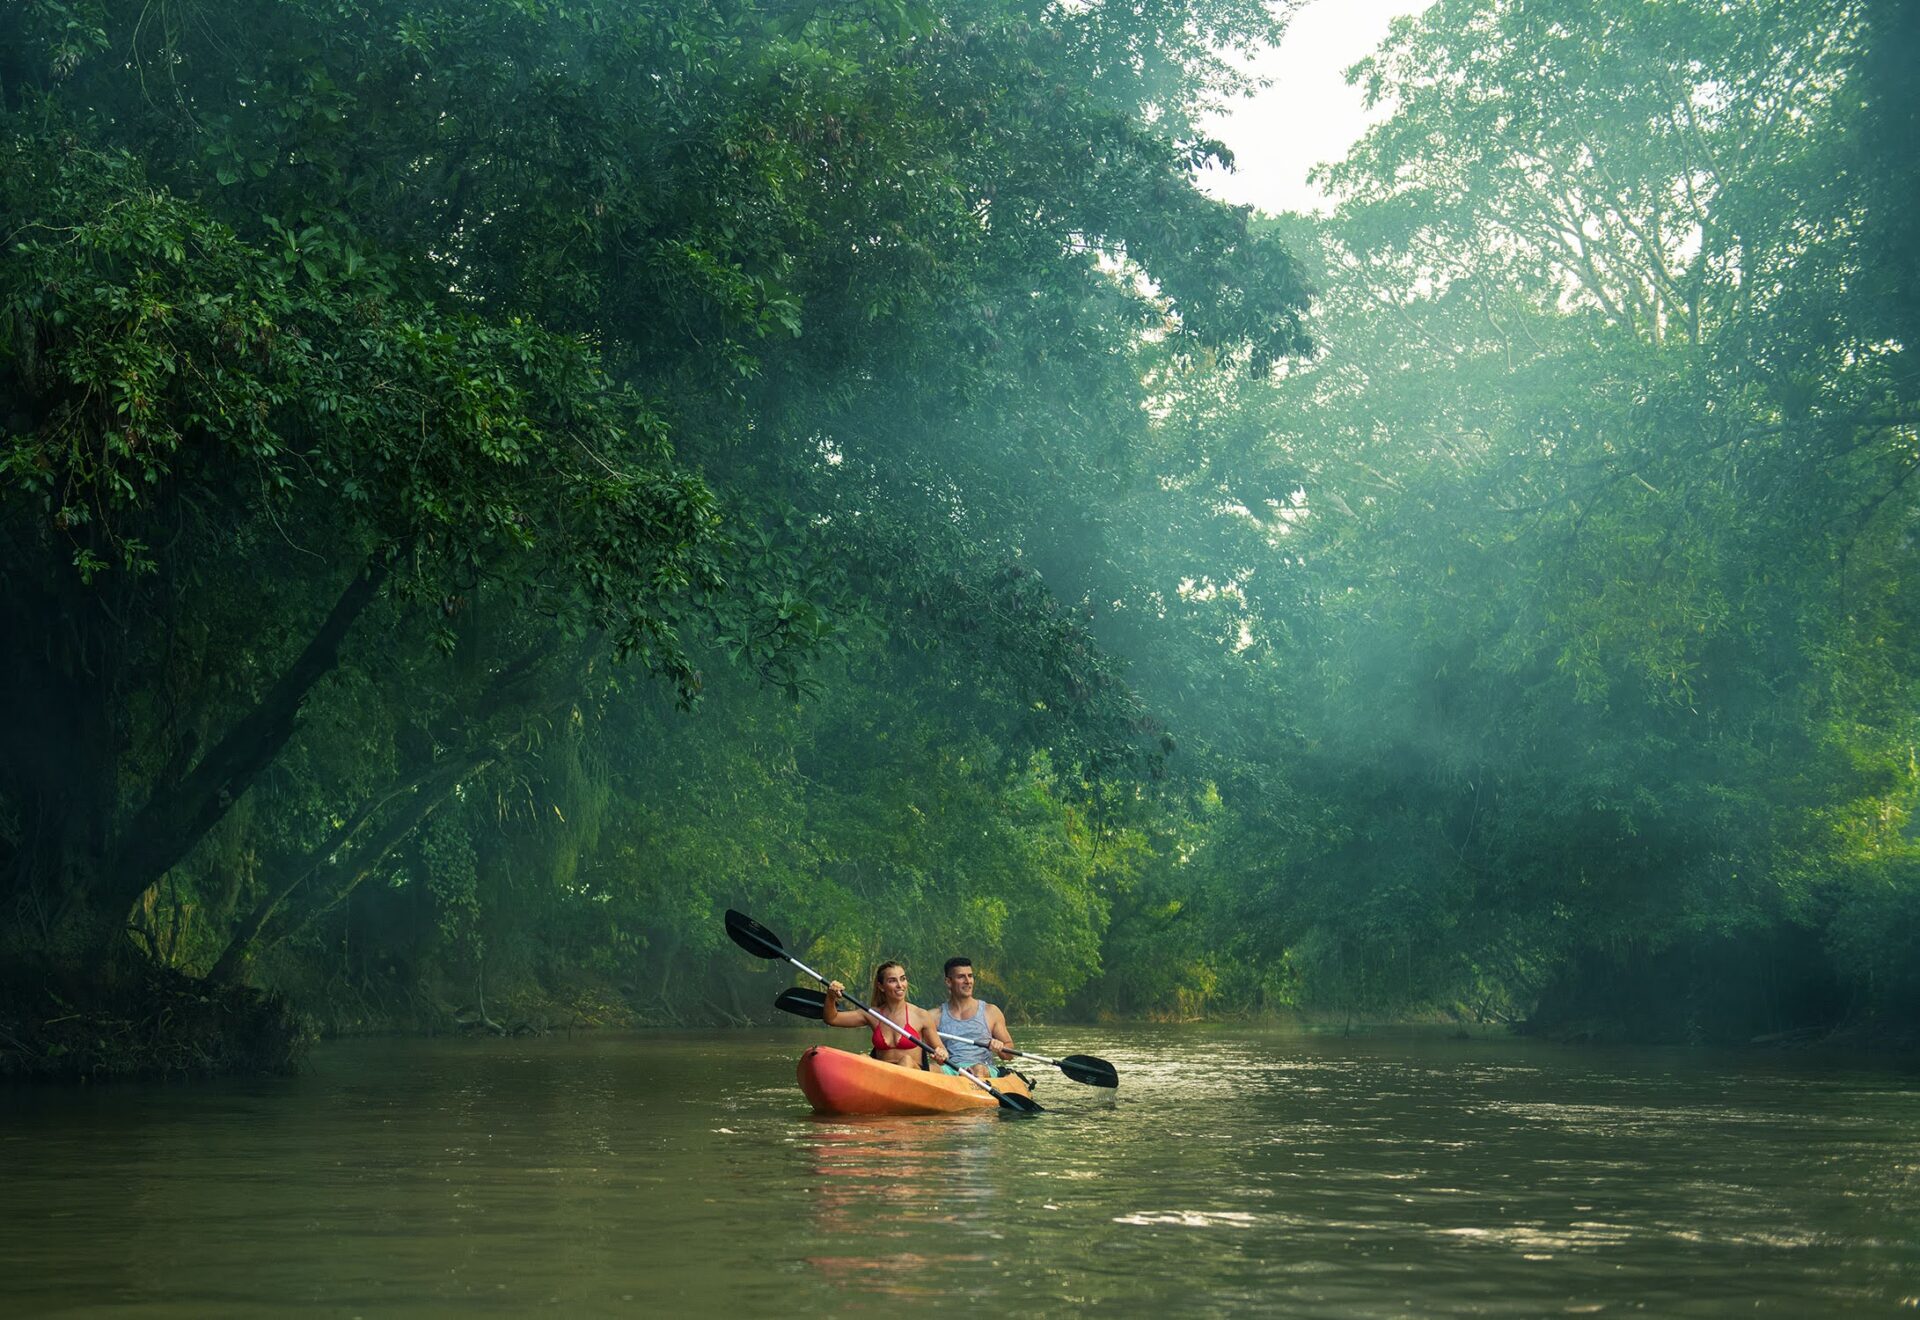 Kayaking on Rio Celeste | Origins Eco-lodge in Costa Rica